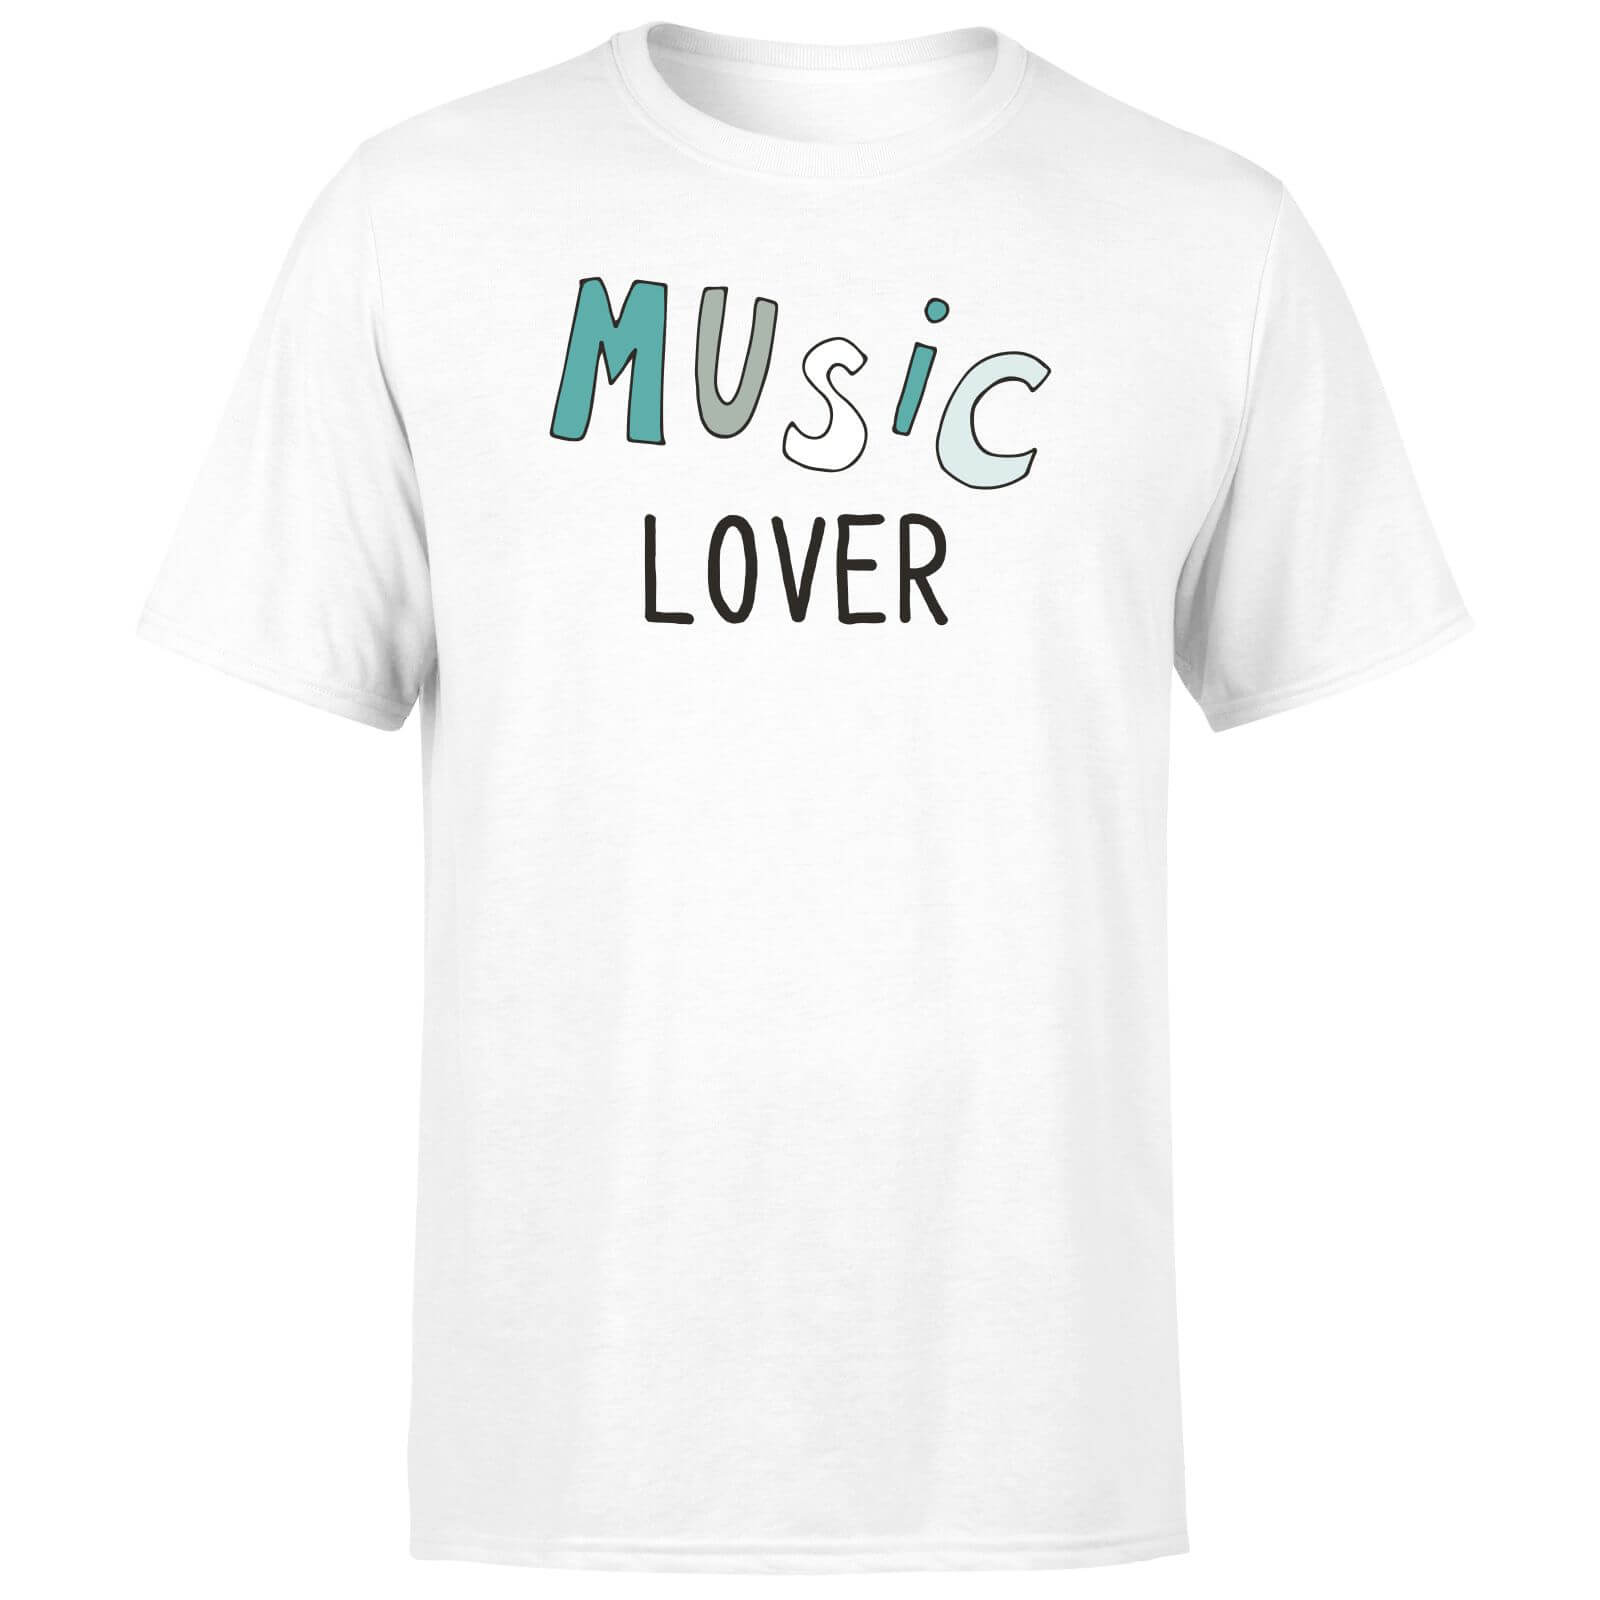 Music Lover Men's T-Shirt - White - XS - White